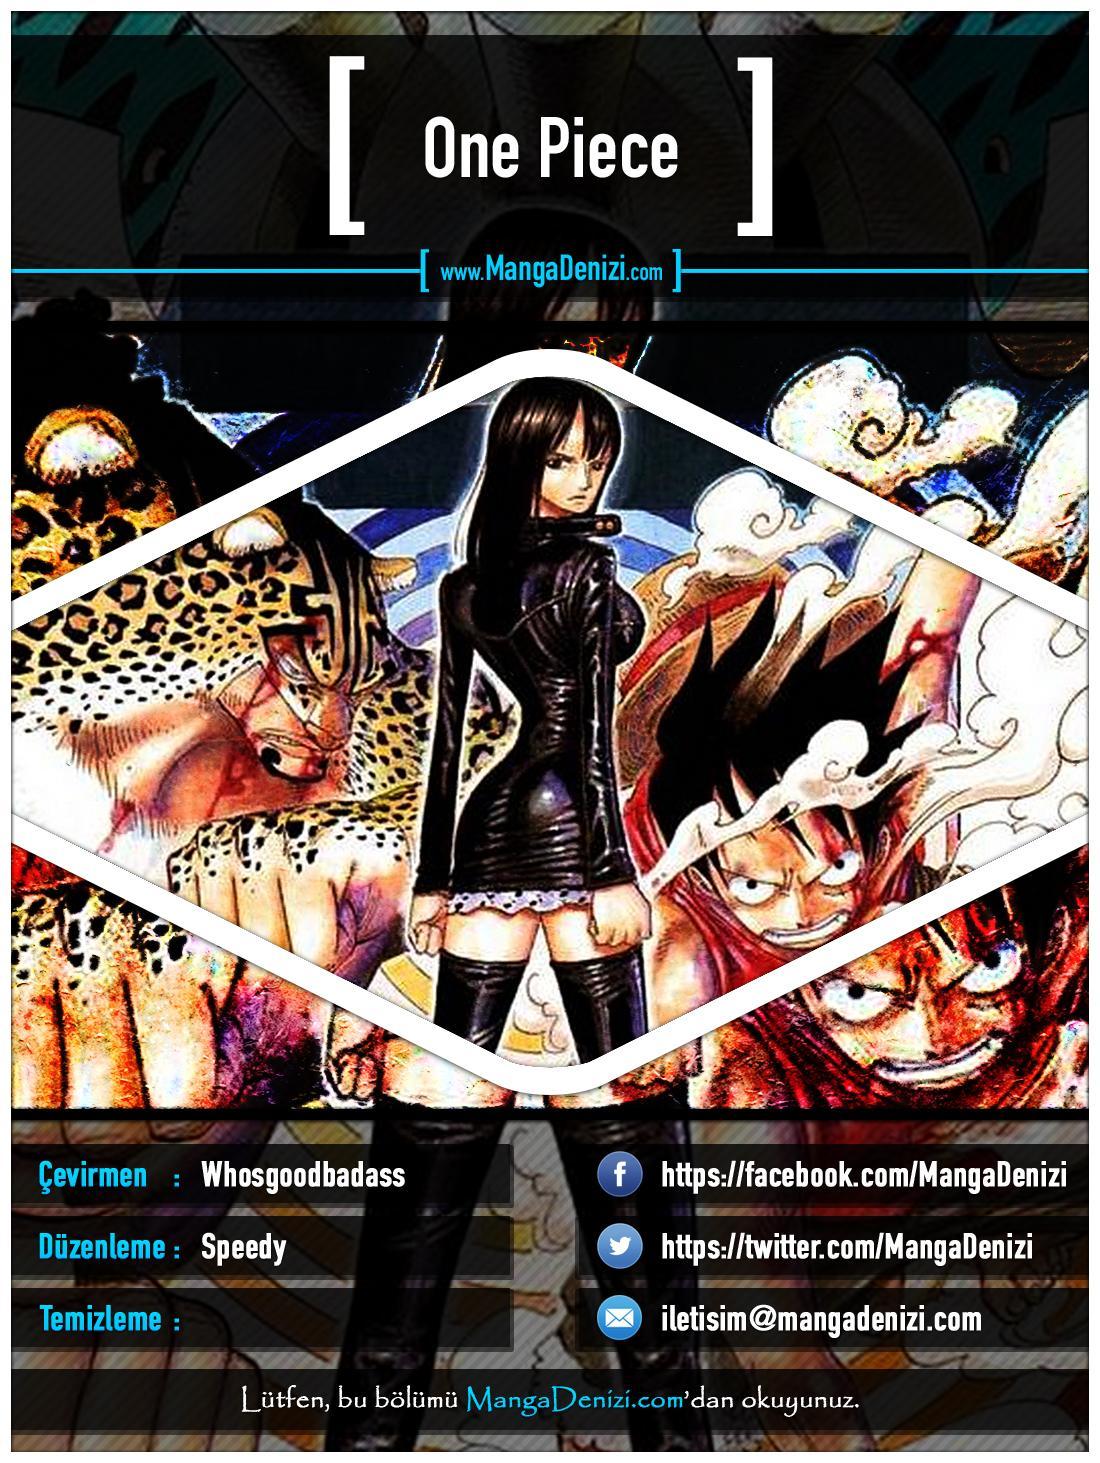 One Piece [Renkli] mangasının 0333 bölümünün 1. sayfasını okuyorsunuz.